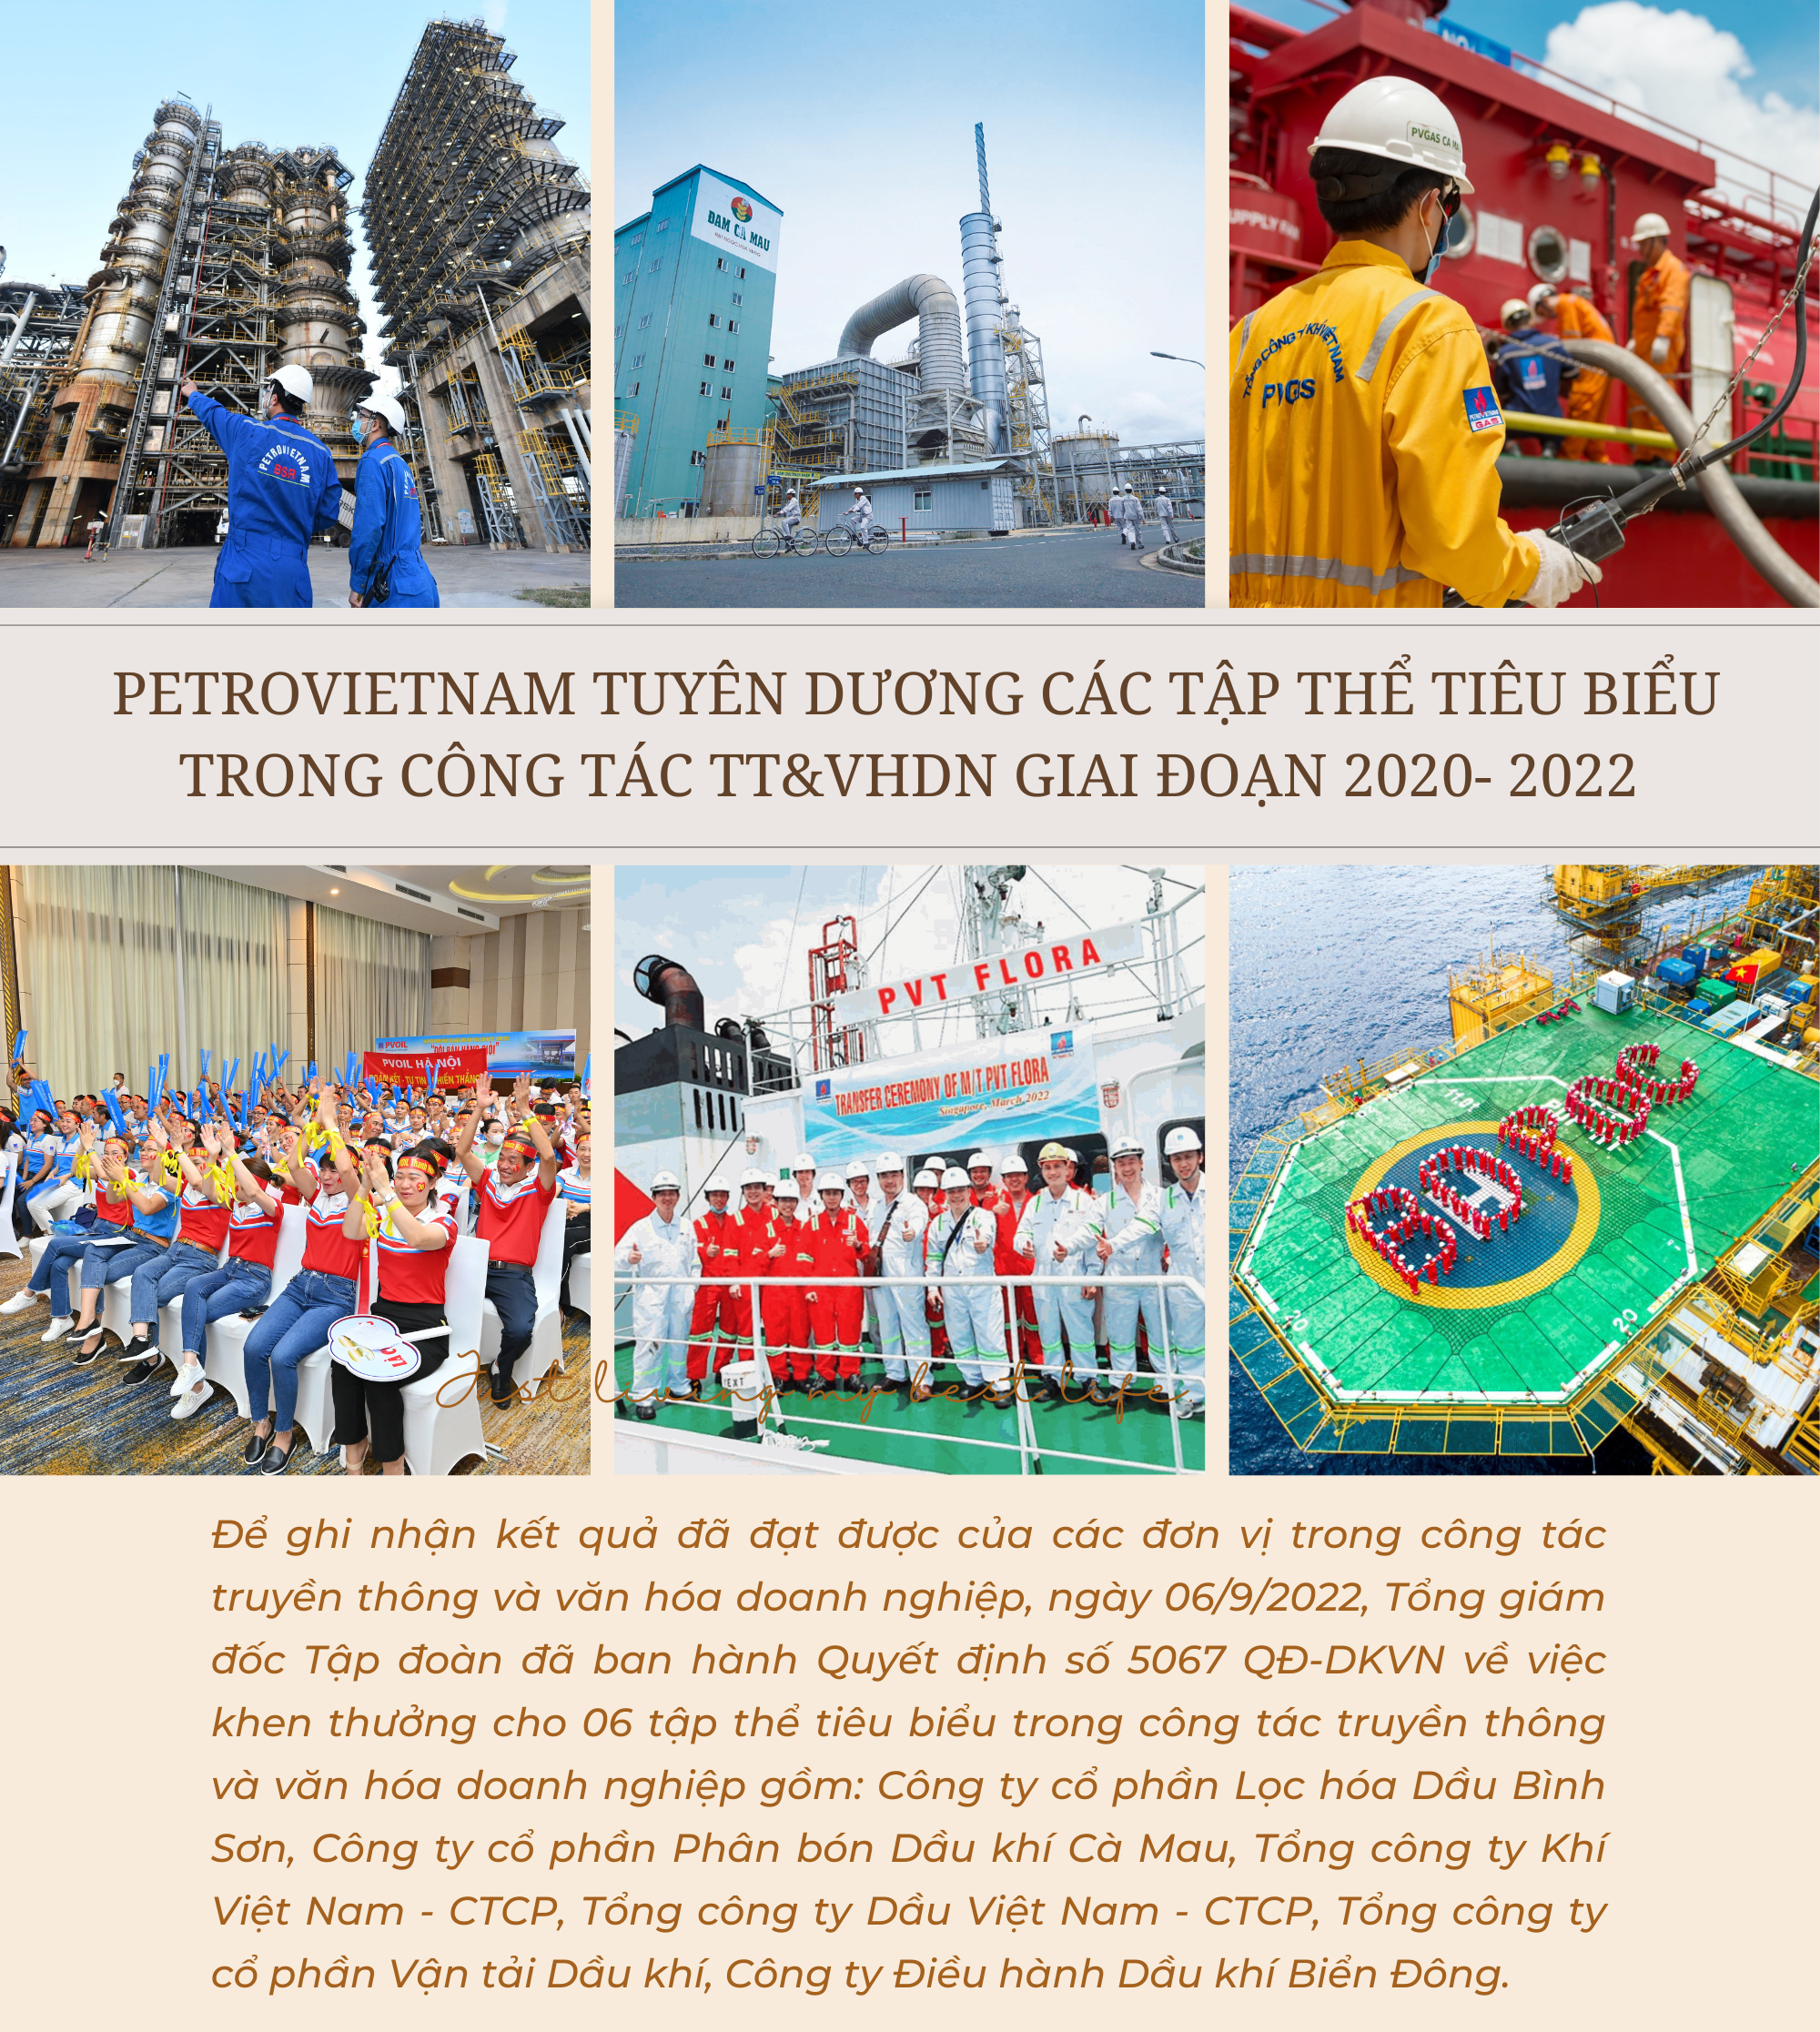 [E-Magazine] Petrovietnam tuyên dương các tập thể tiêu biểu trong công tác TT&VHDN giai đoạn 2020 - 2022